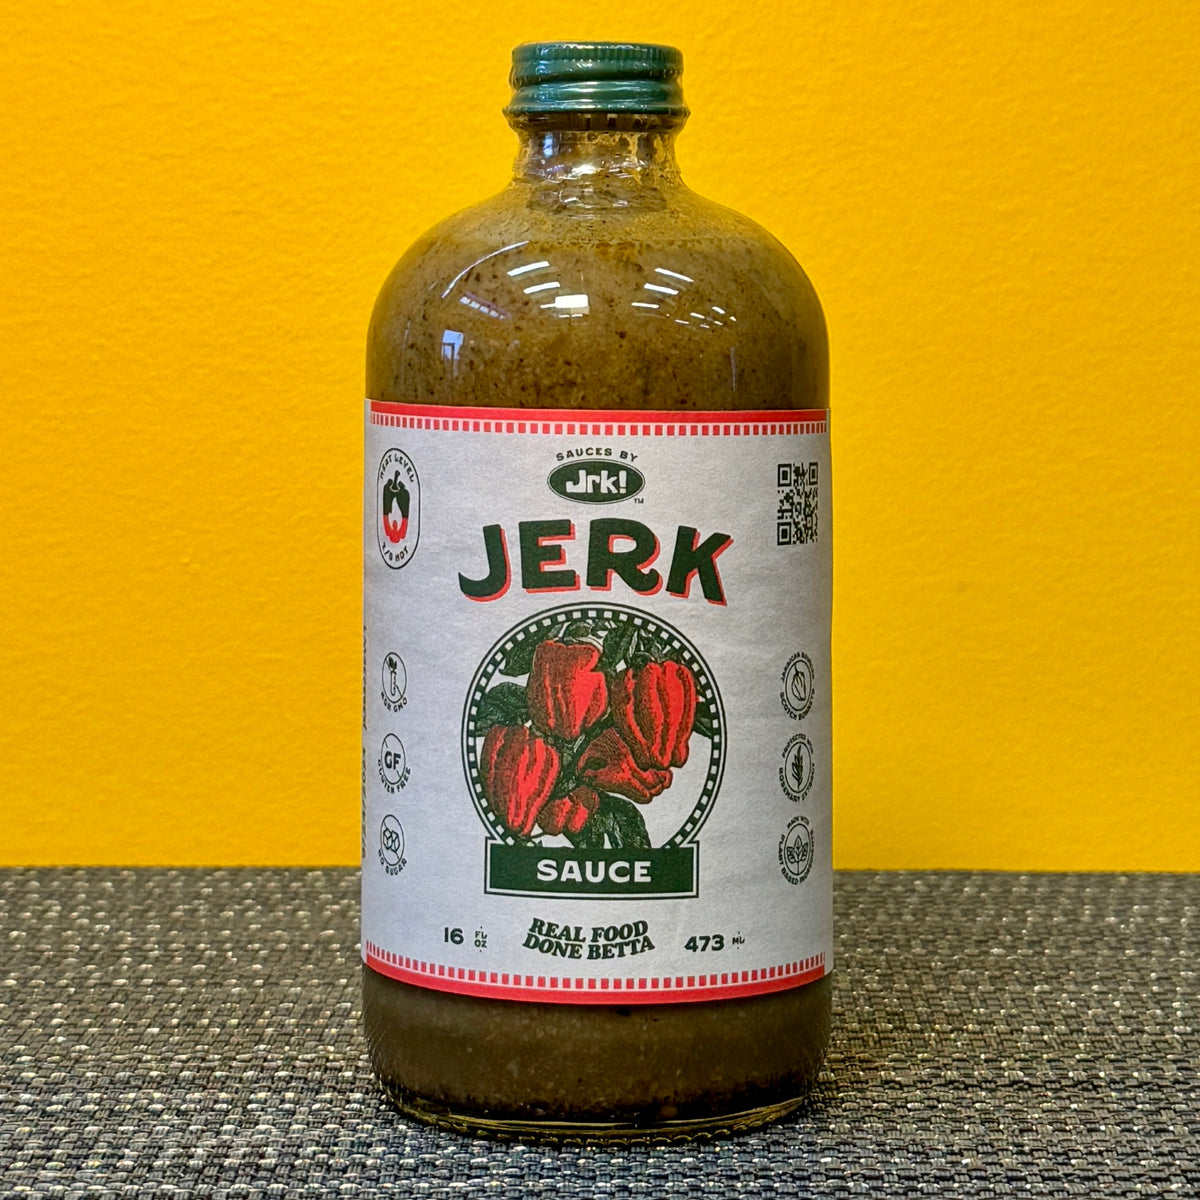 Sauces by Jrk! Signature Jerk Sauce 16 oz